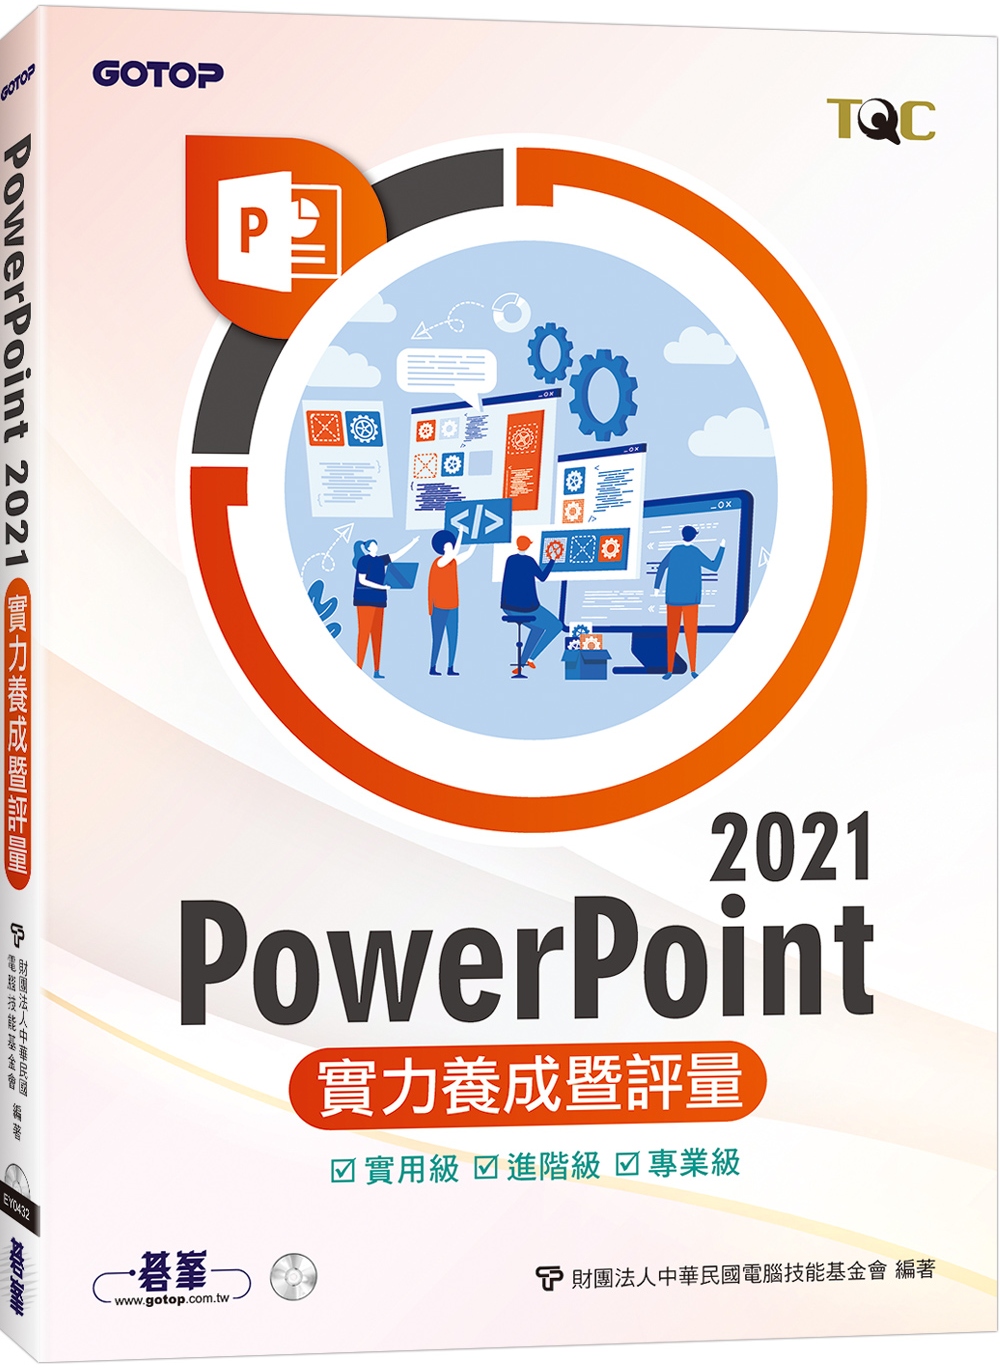 PowerPoint 2021實力養成暨評量